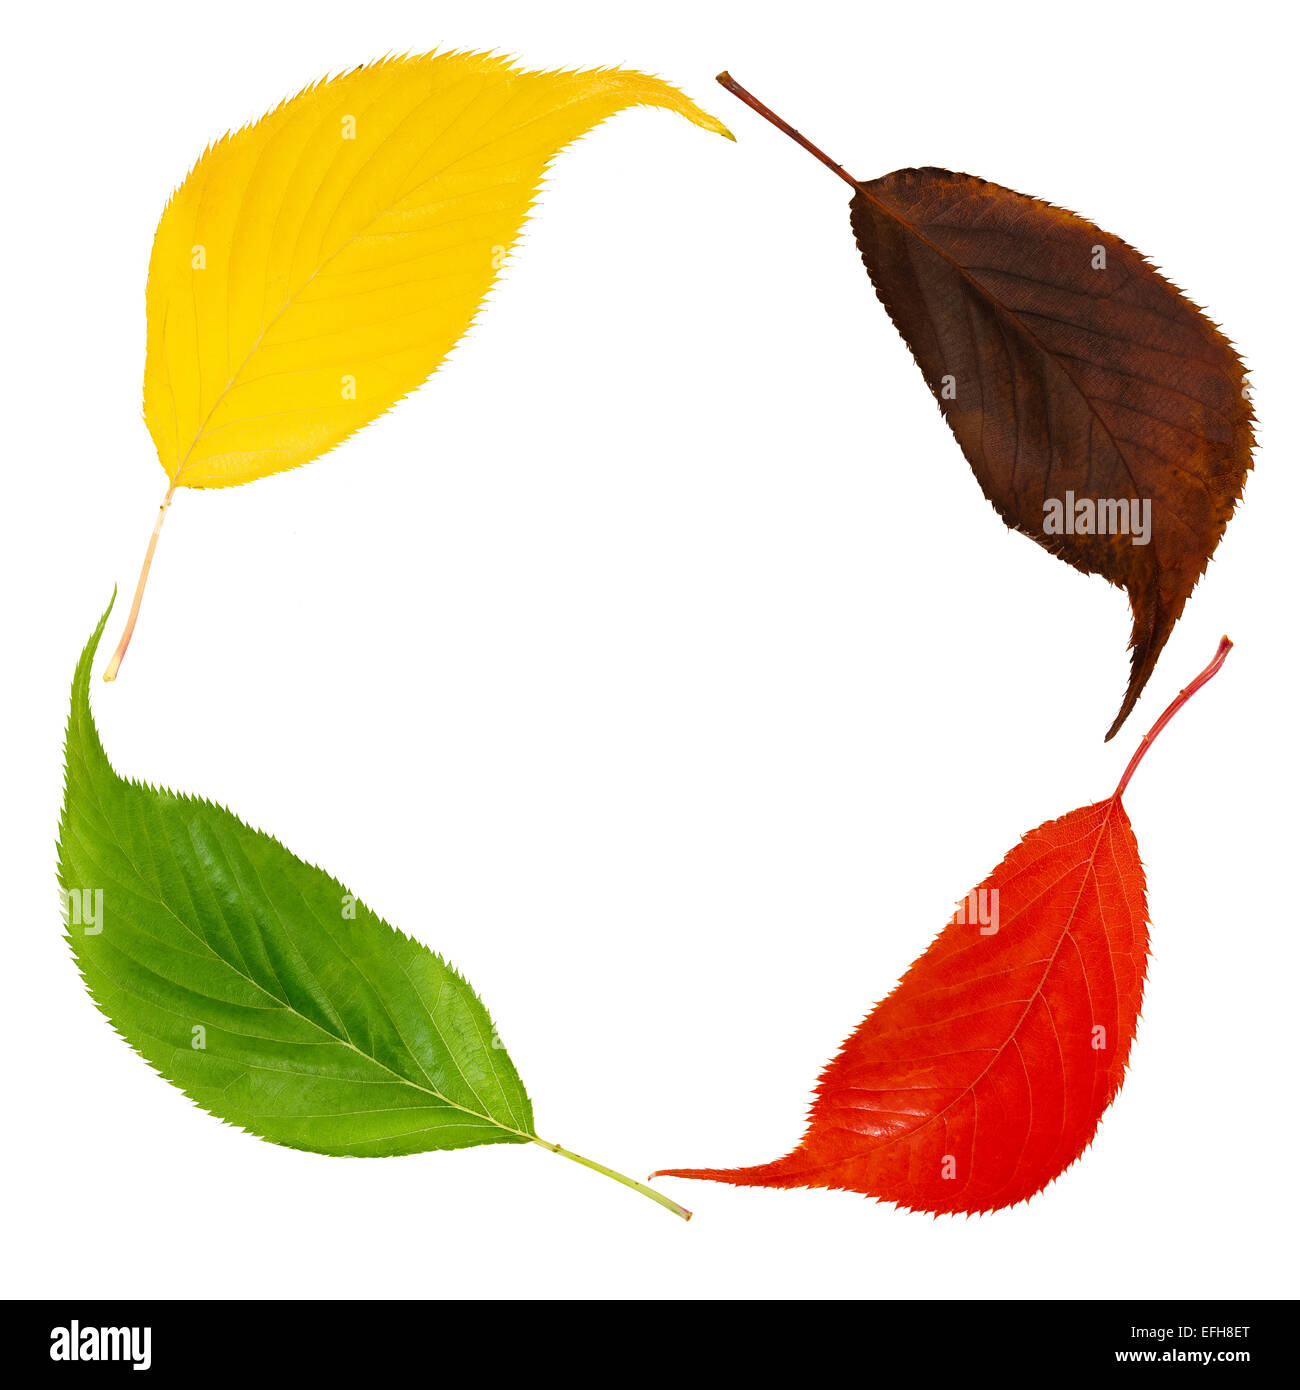 ausgeschnittene Bild der verschiedenen farbigen Kirsche verlässt, Wechsel der Jahreszeiten darstellt oder recycling Konzept Stockfoto